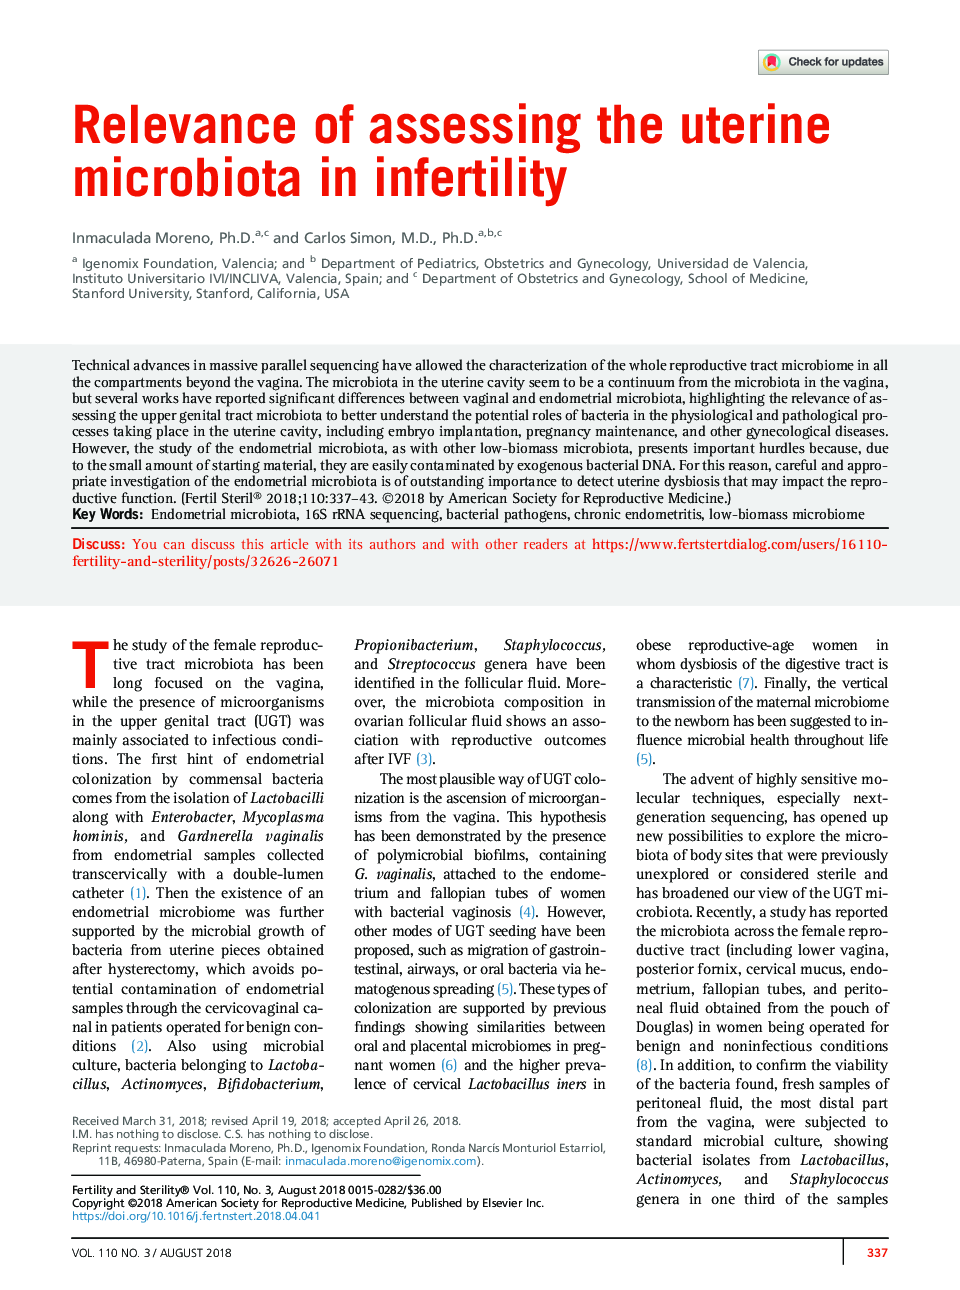 اهمیت ارزیابی میکروبیوتا رحم در ناباروری 